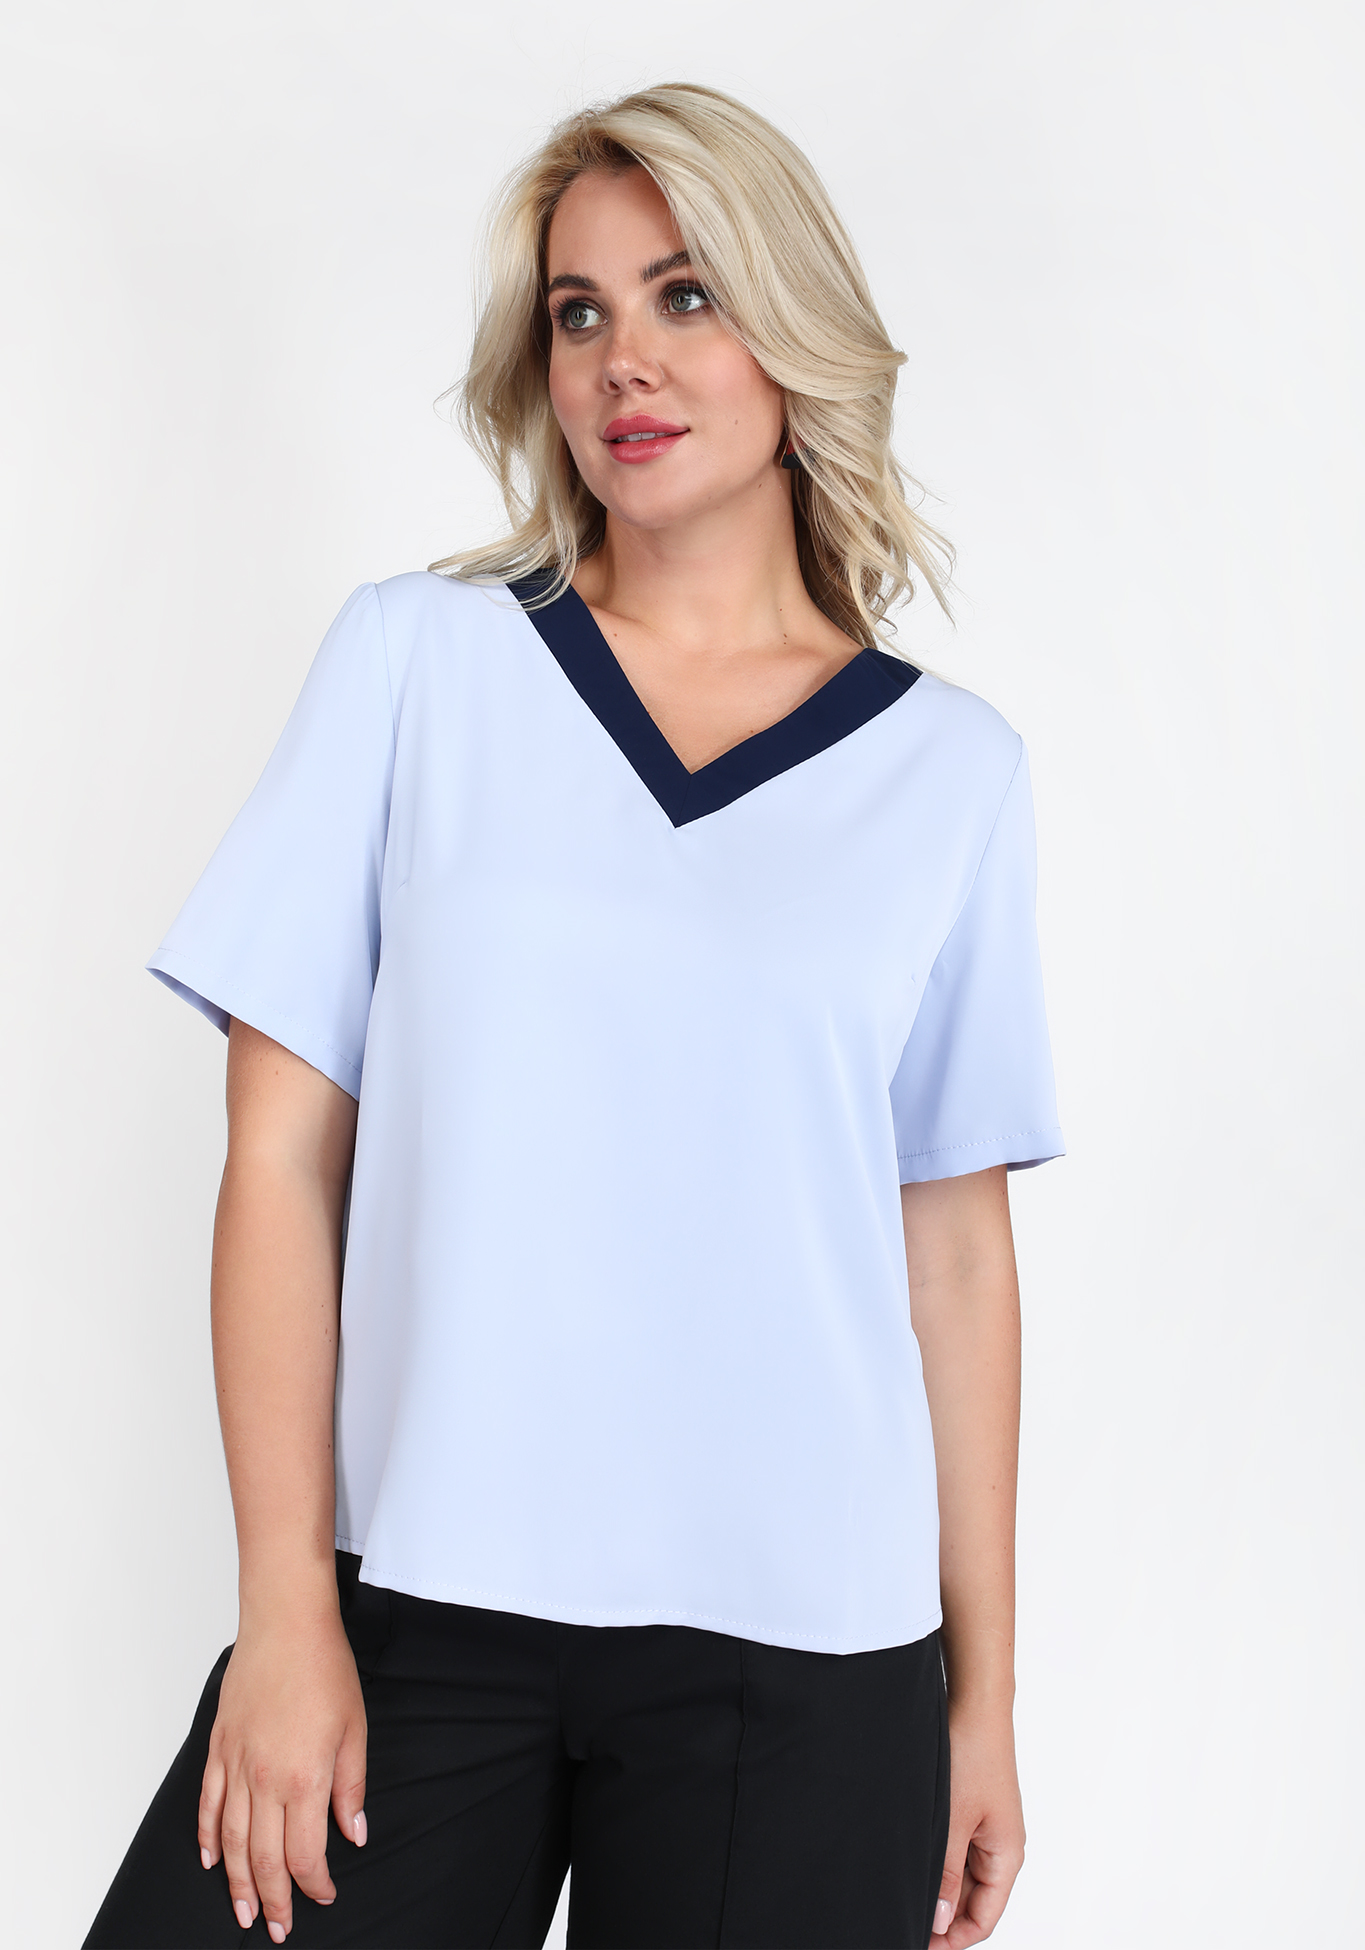 Блузка с контрастной планкой Elletto Life, размер 54, цвет голубой комфорт - фото 1